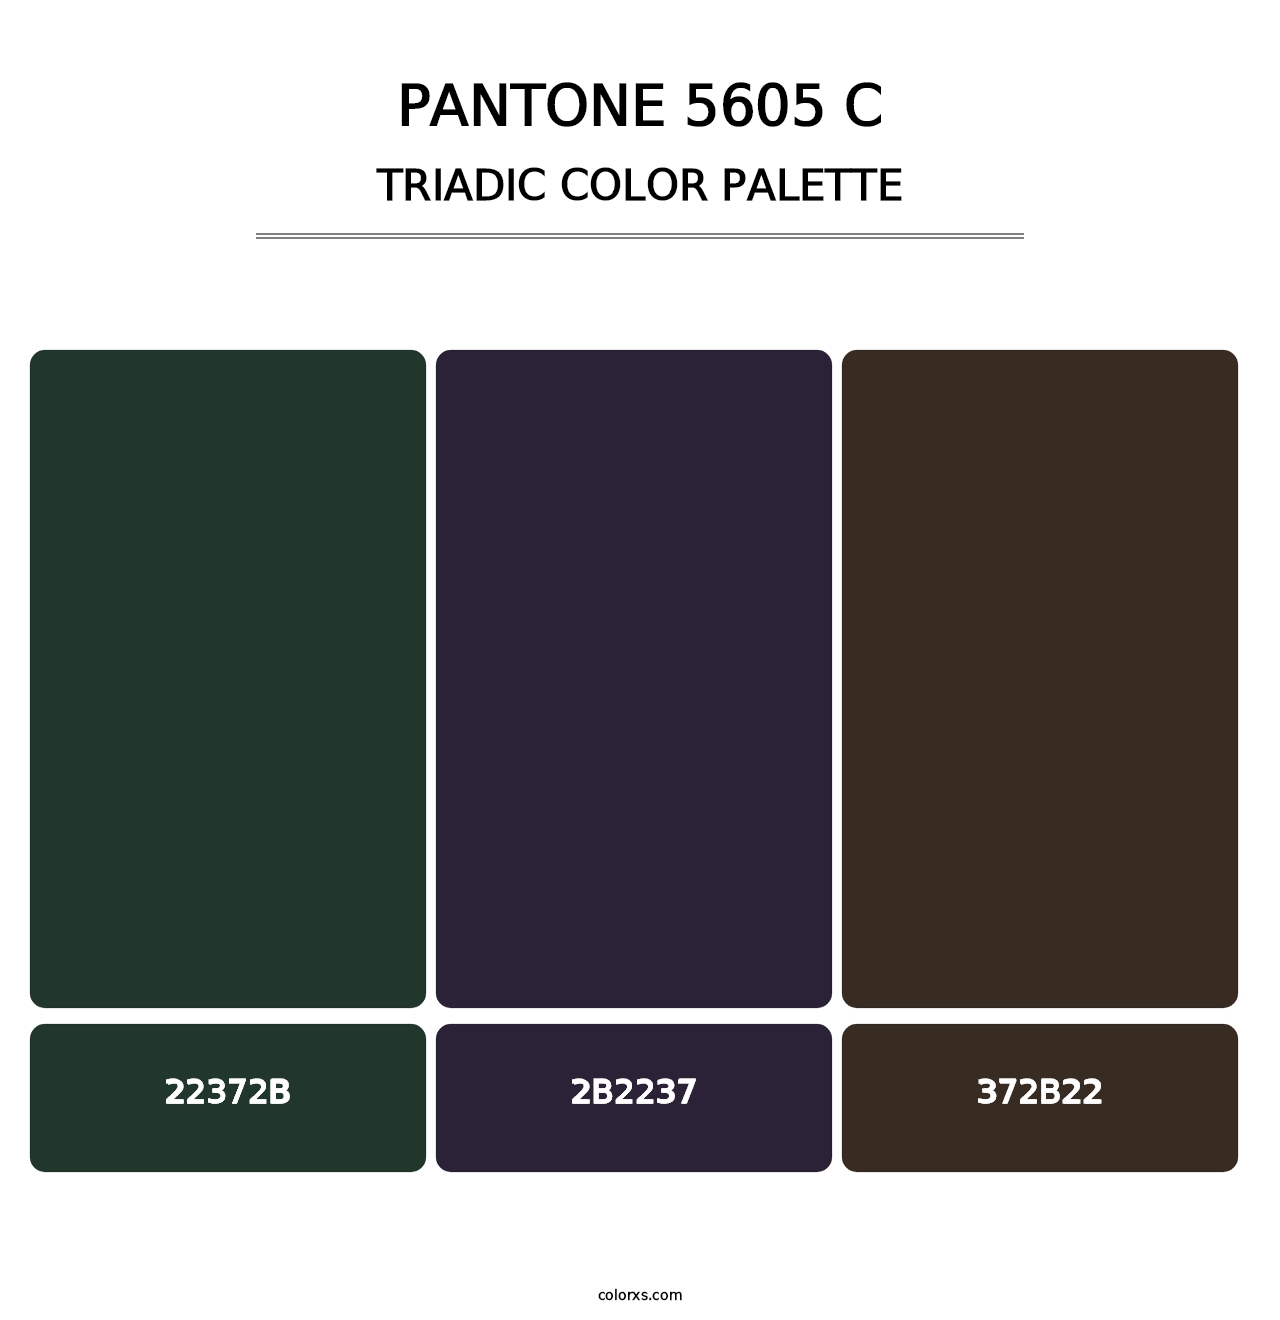 PANTONE 5605 C - Triadic Color Palette